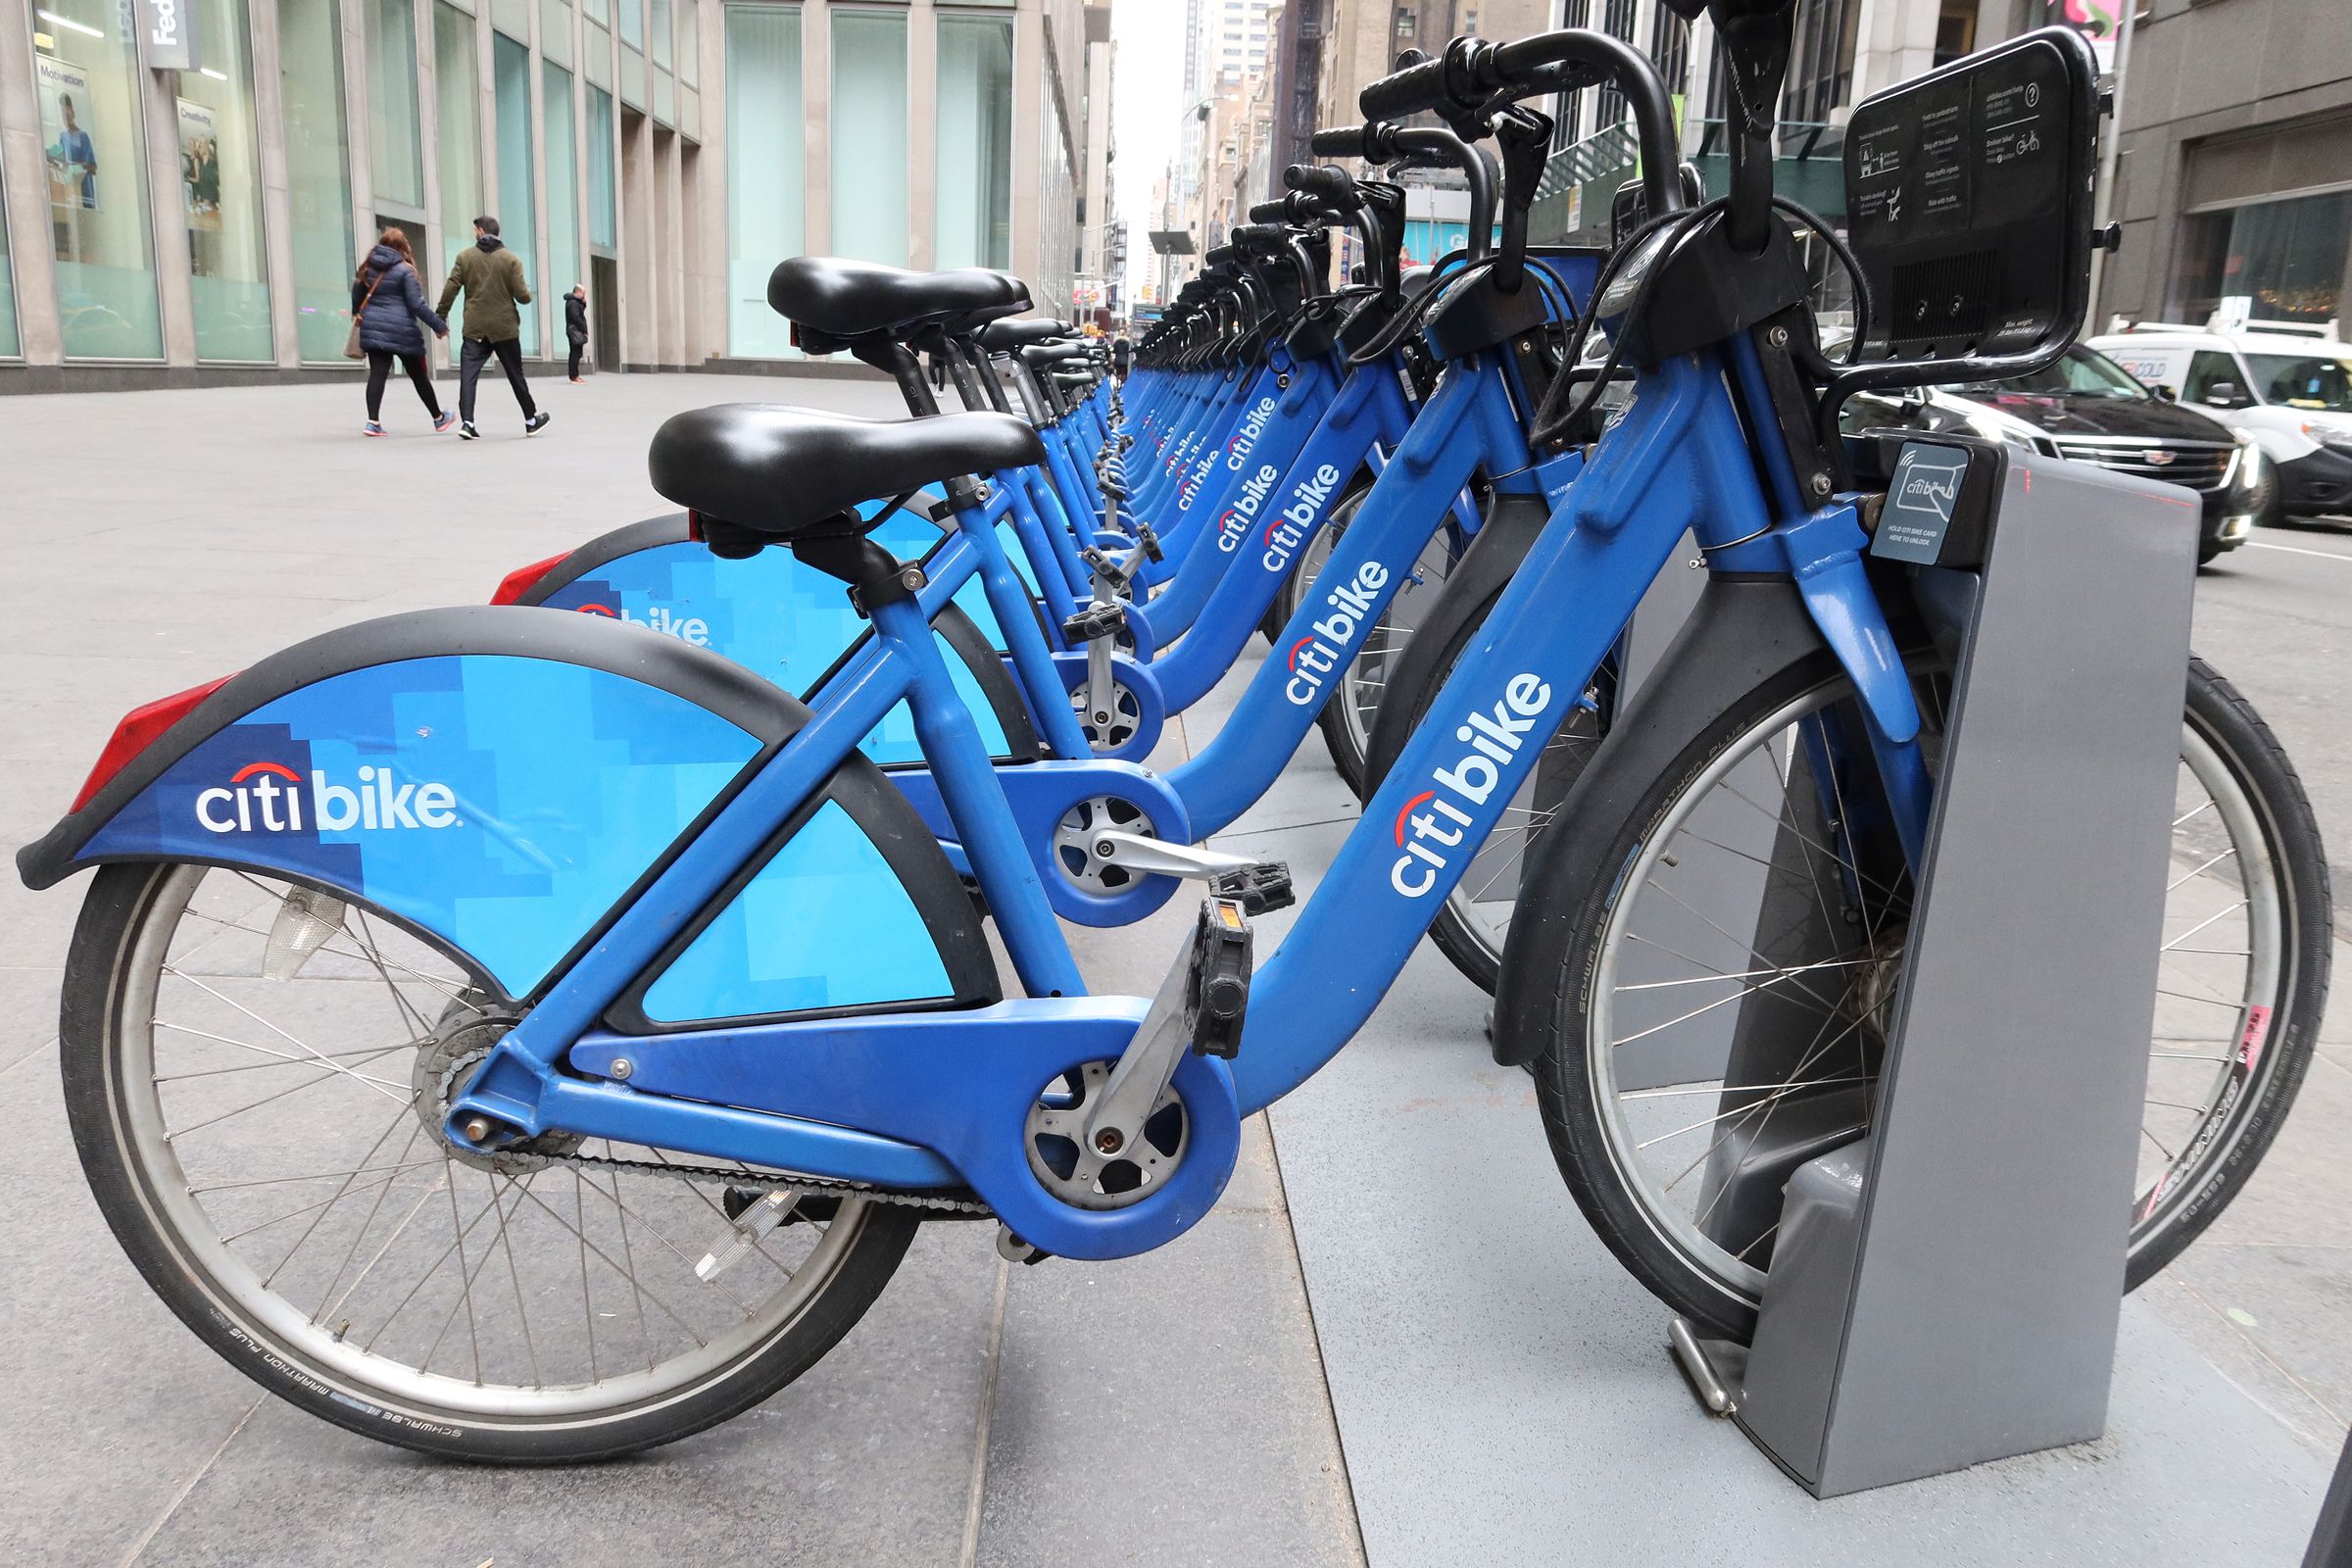 Citibike Rideshare Bicycles in New York City